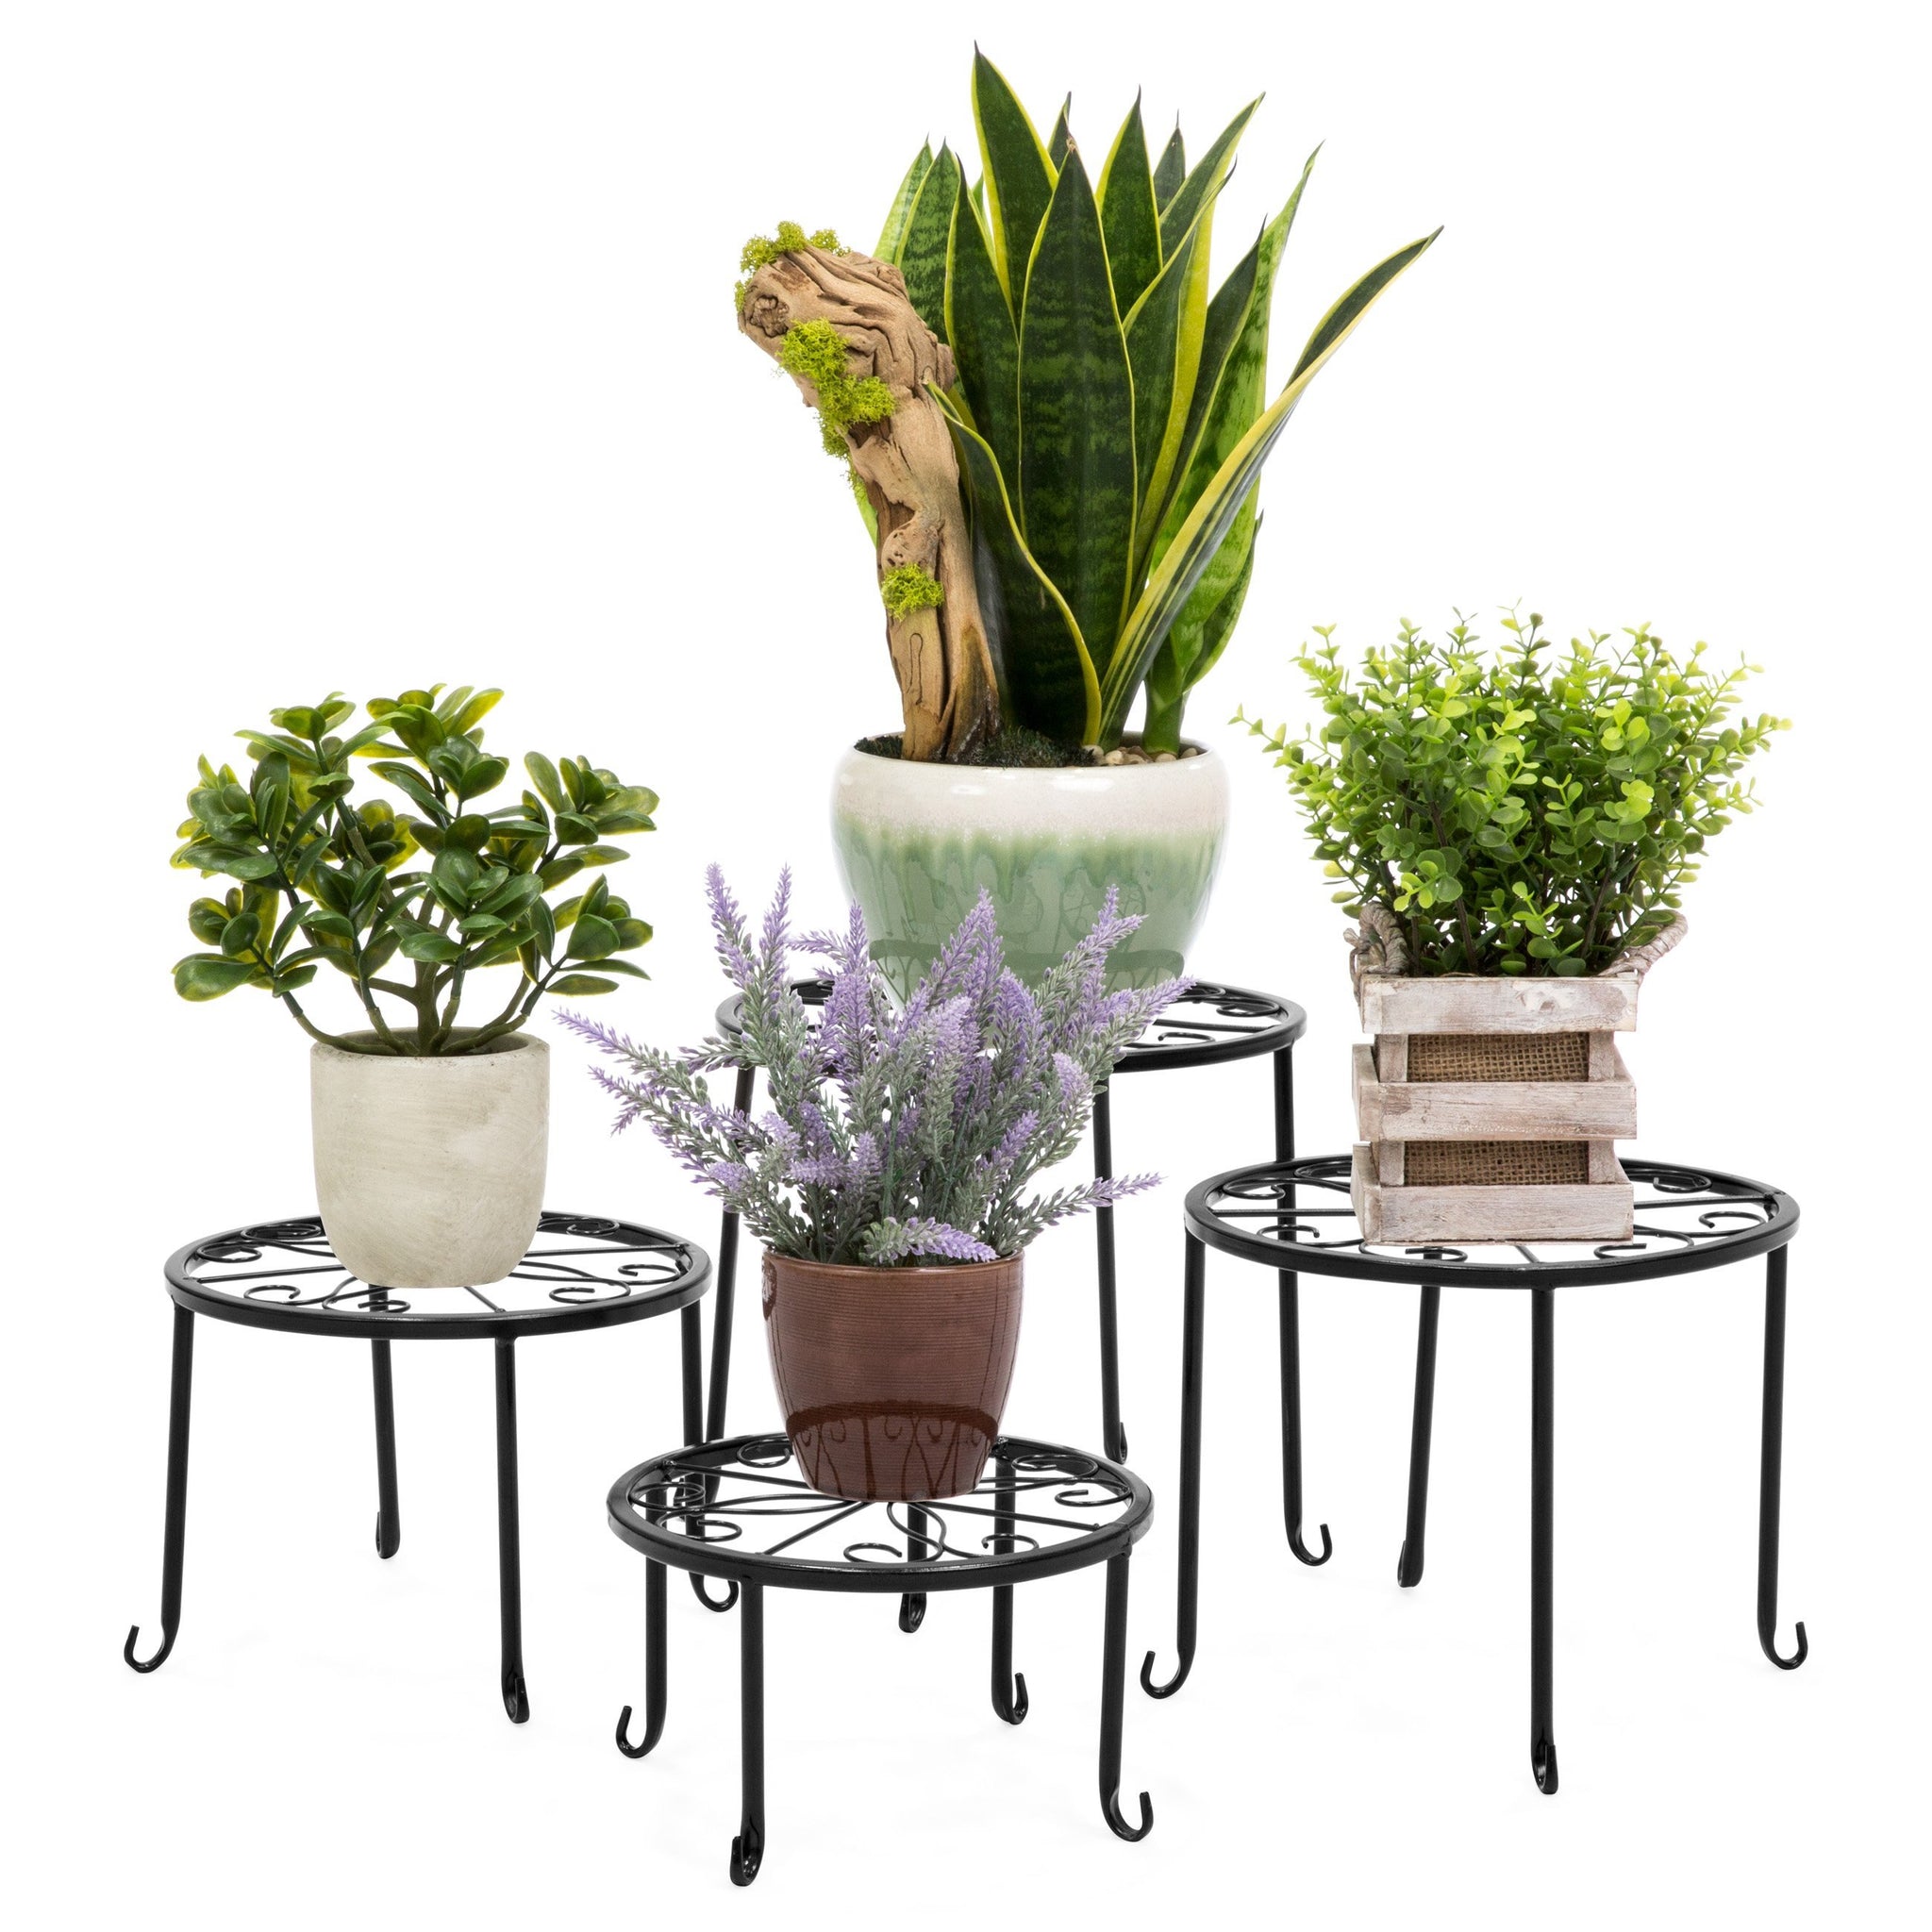 Set of 4 Indoor Outdoor Metal Nesting Plant Stands, Flower Pot Holders